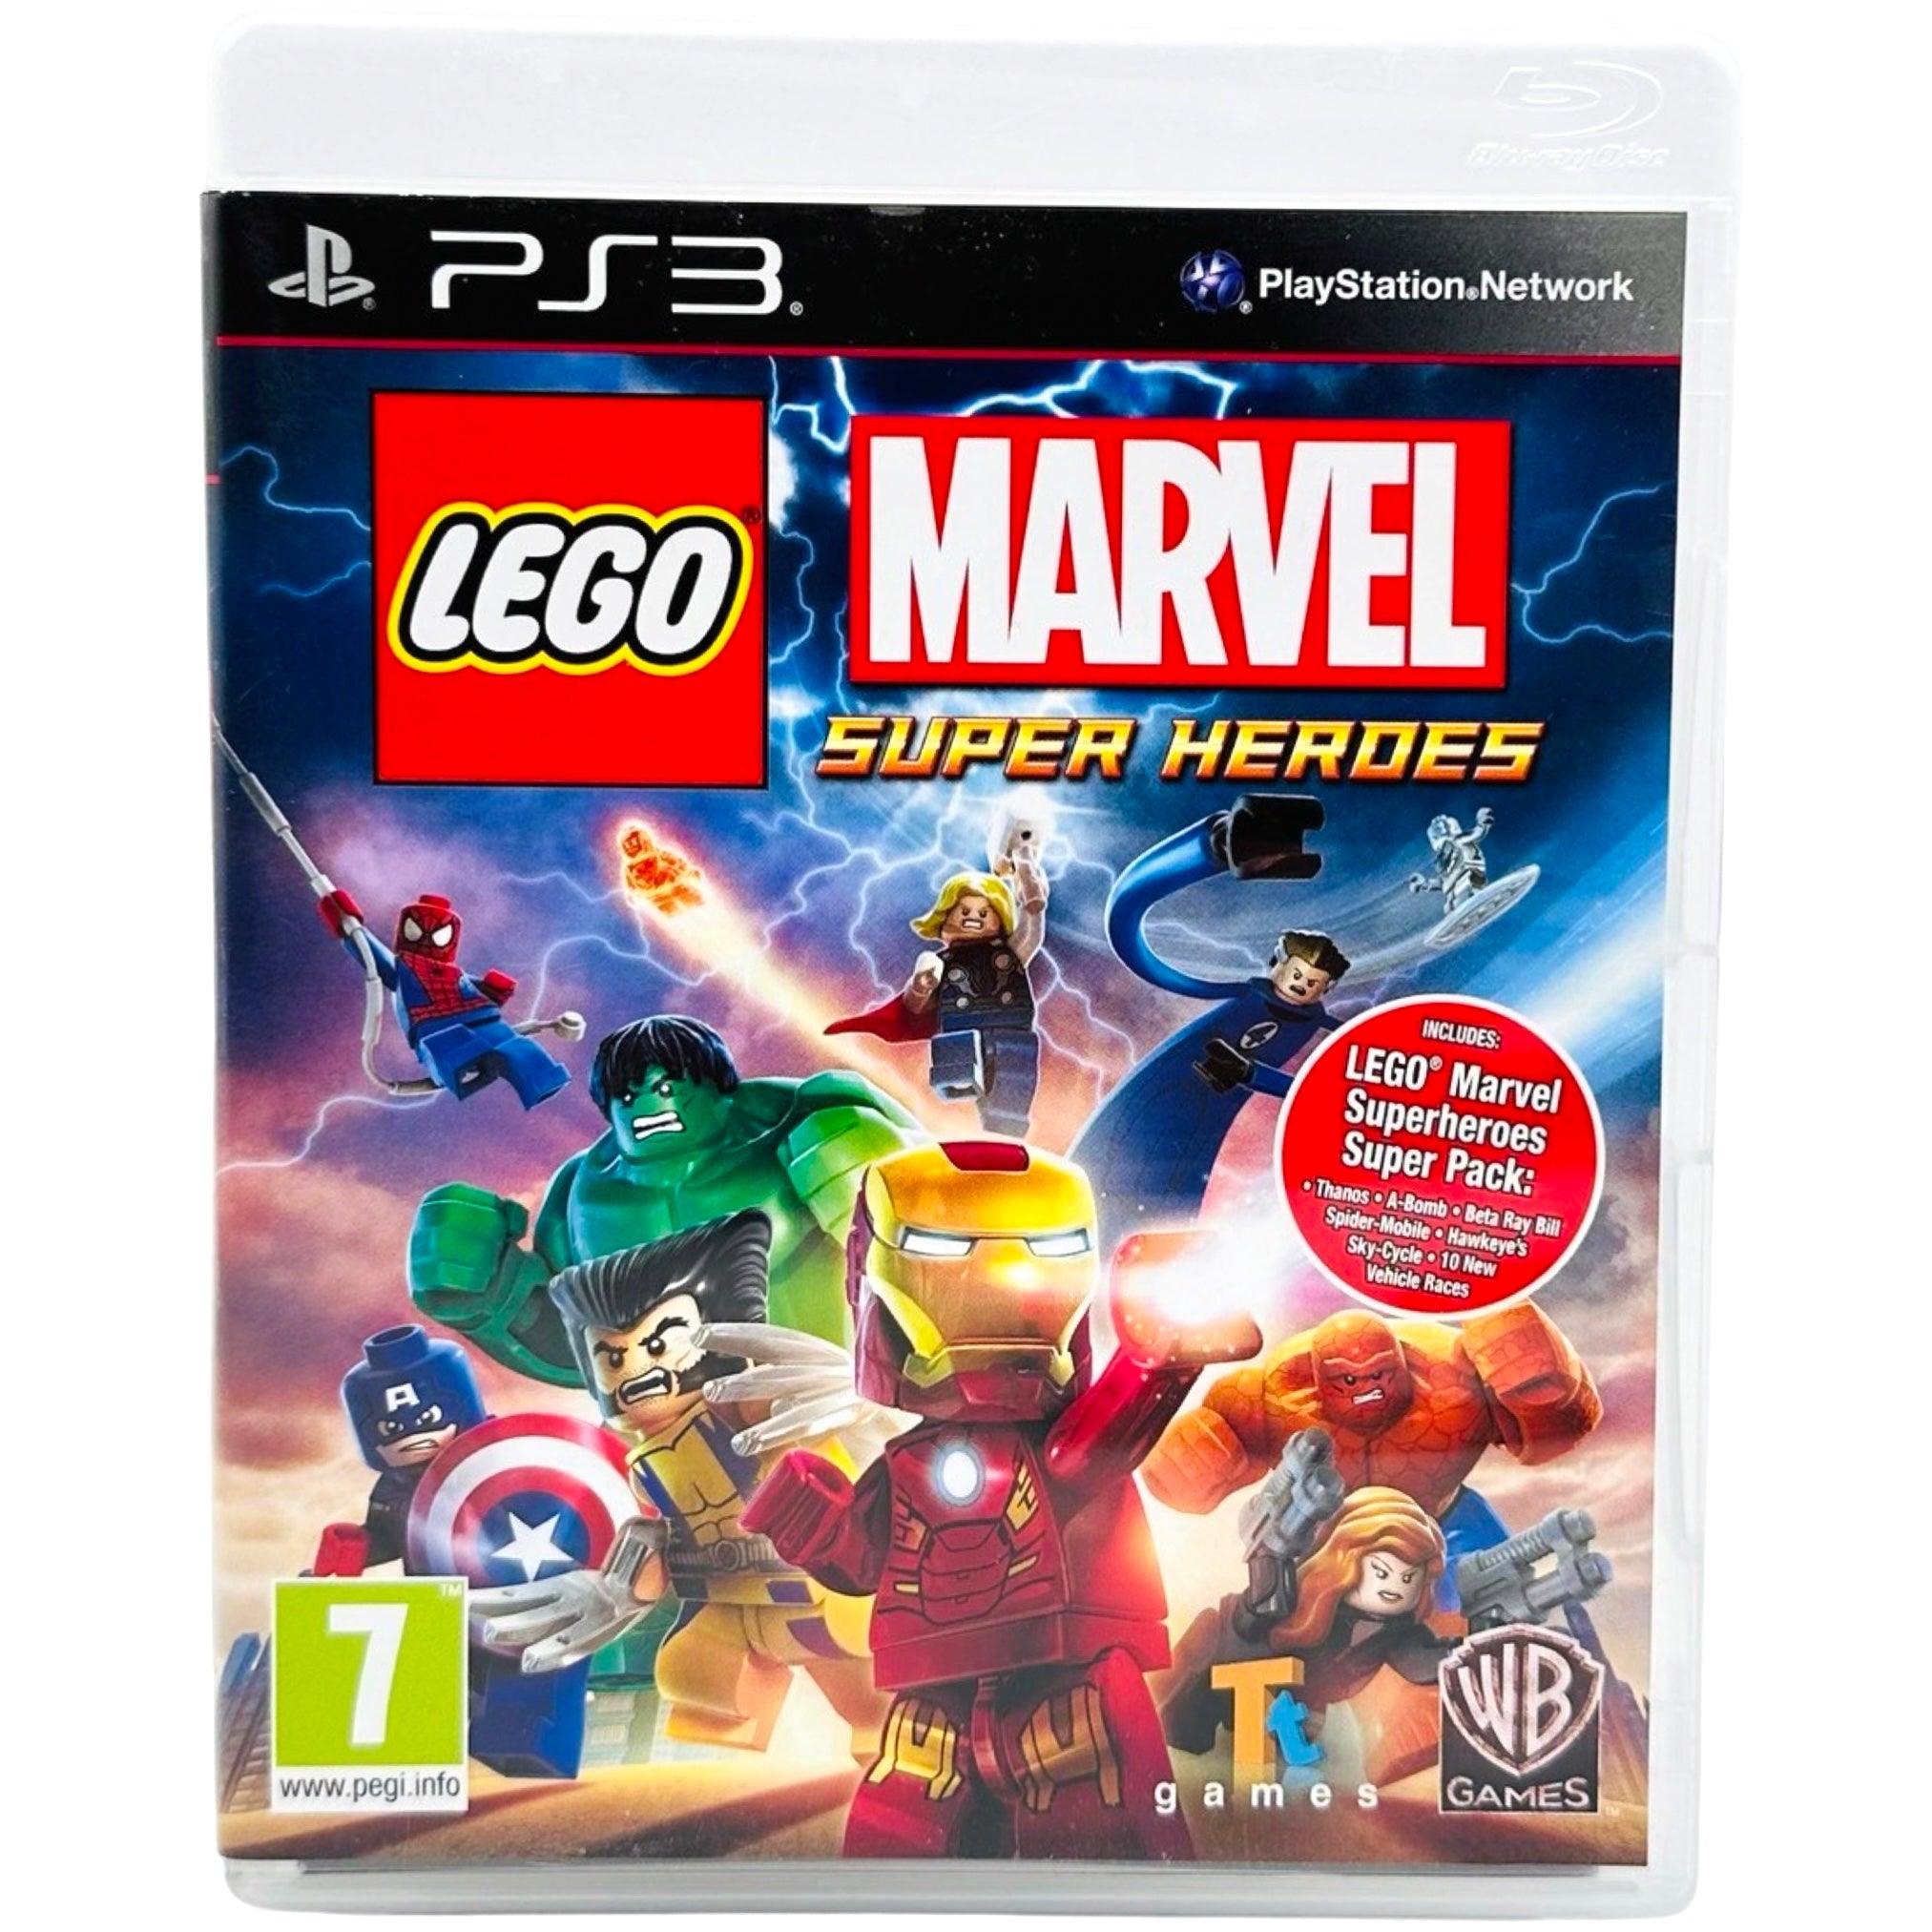 PS3: LEGO Marvel Super Heroes - RetroGaming.no